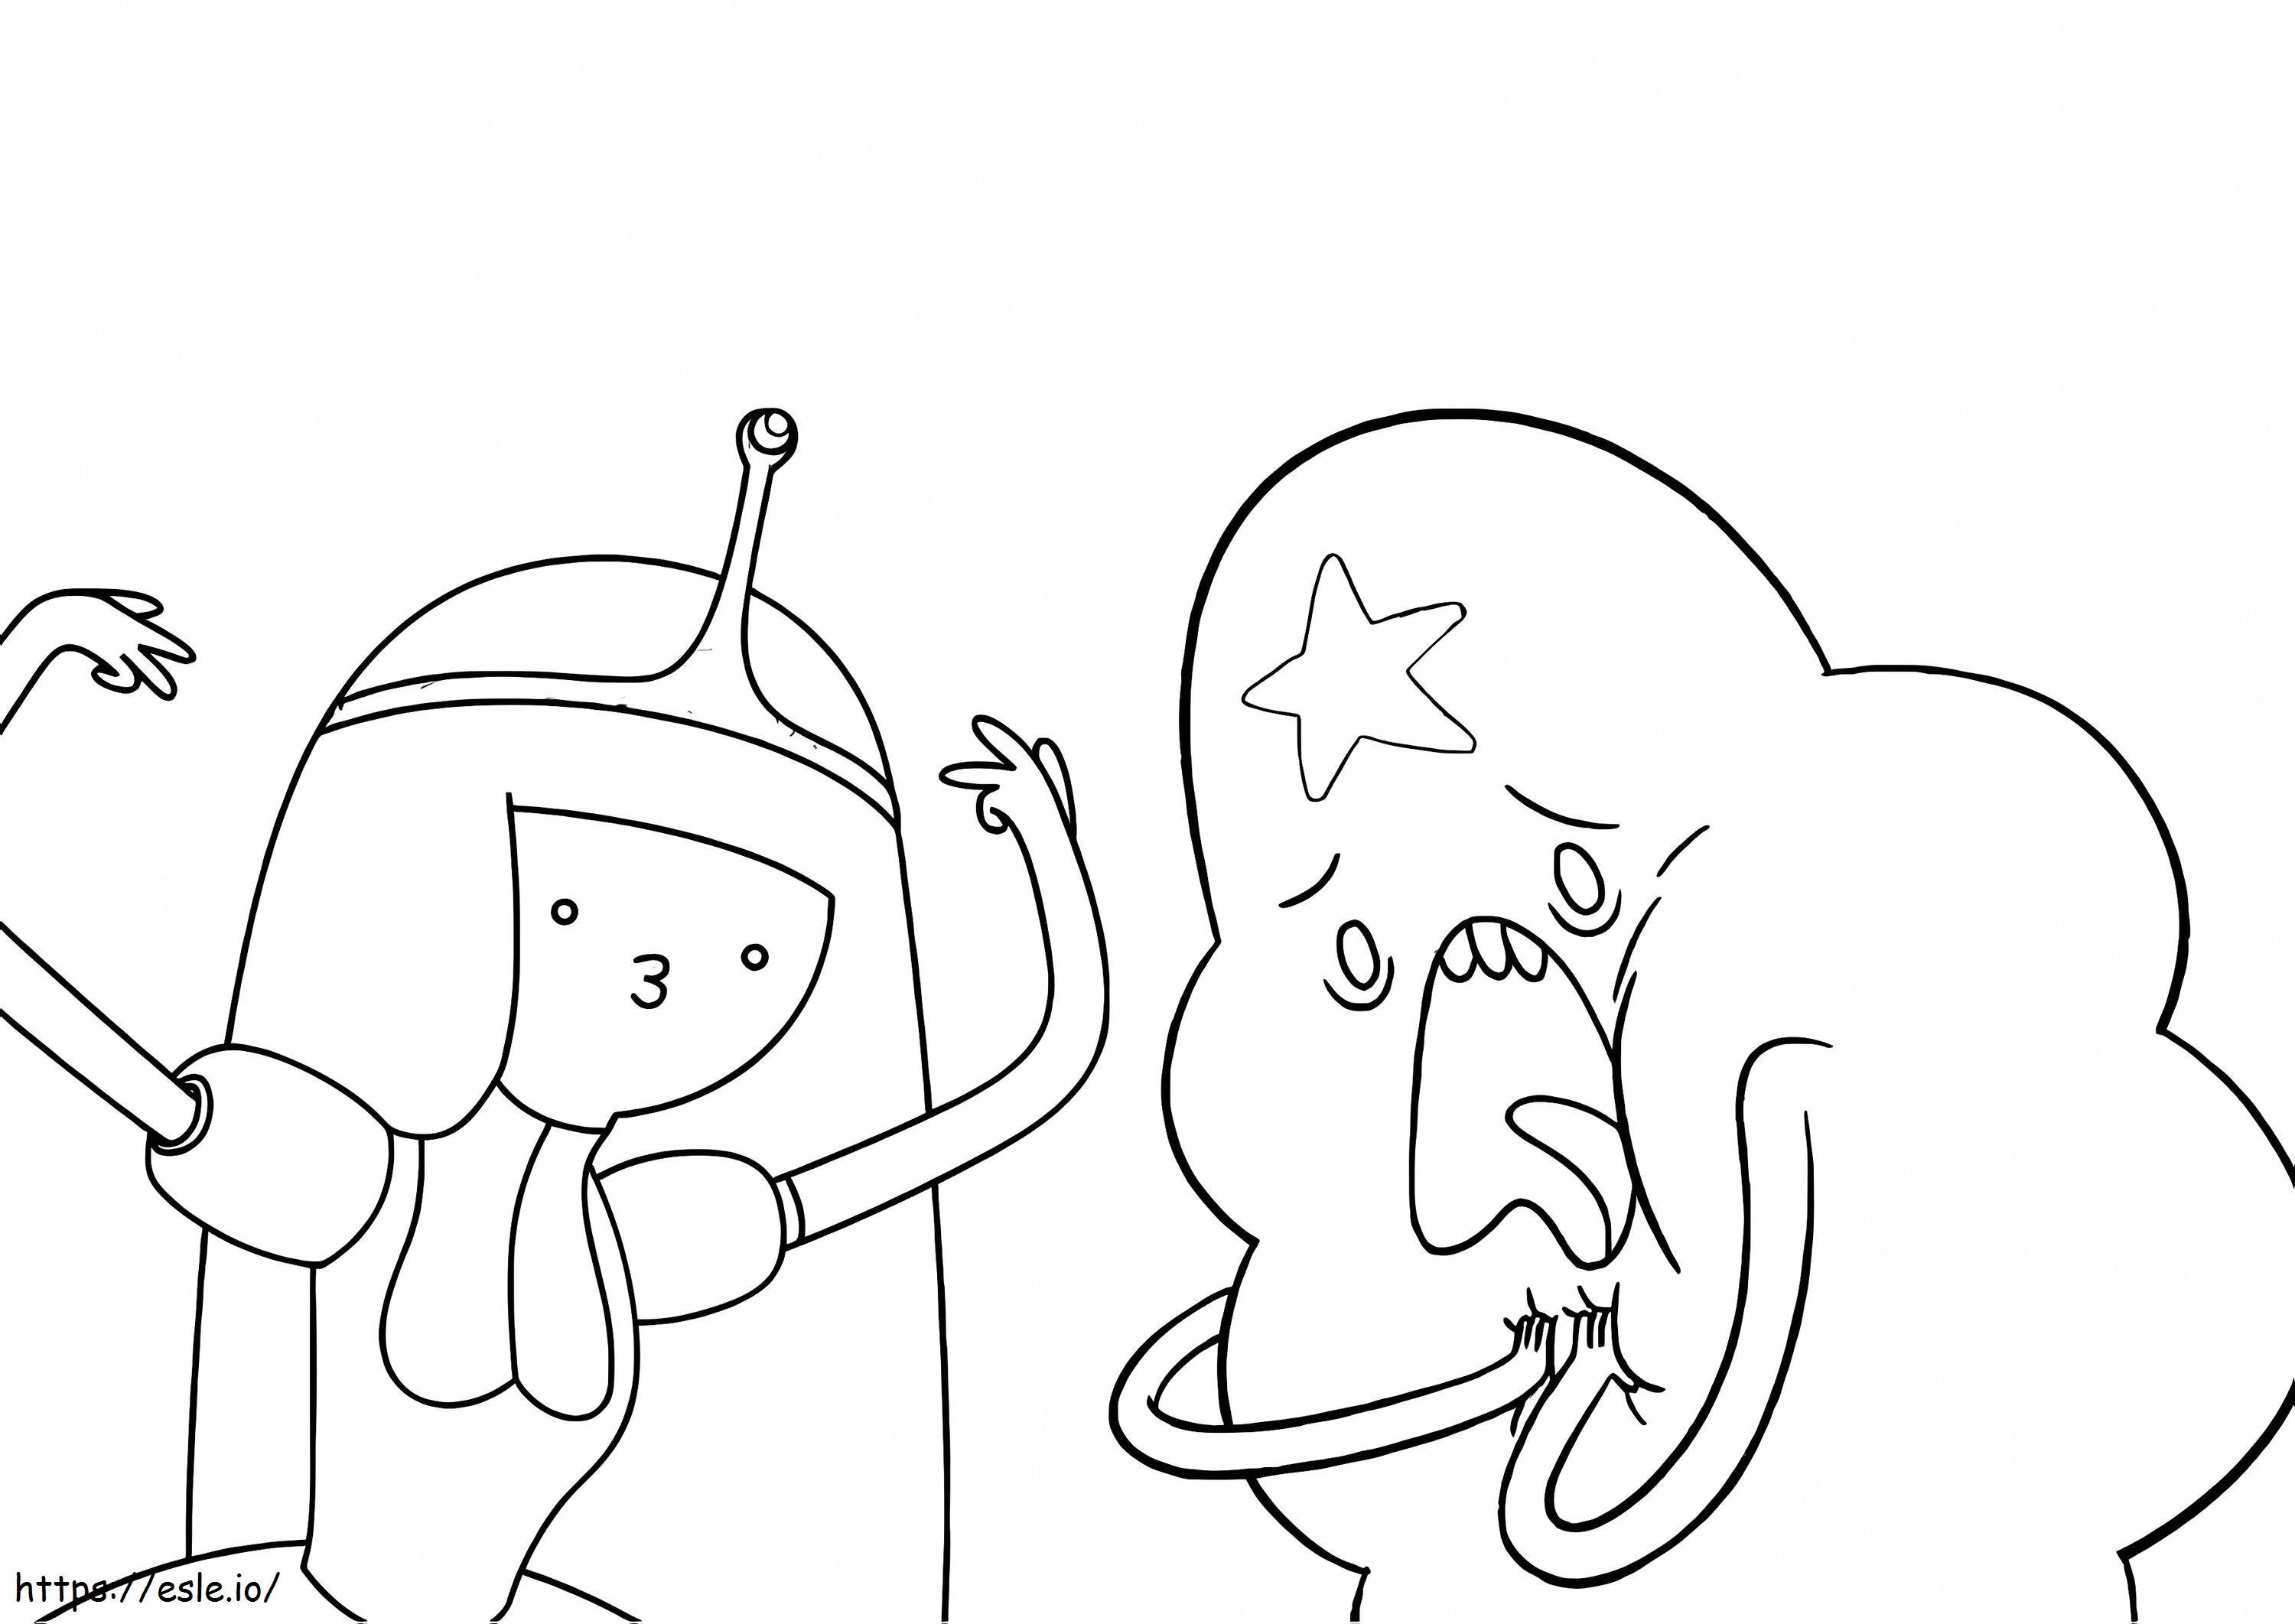 Coloriage Princesse Bubblegum et Princesse de l'espace Lumpy à imprimer dessin